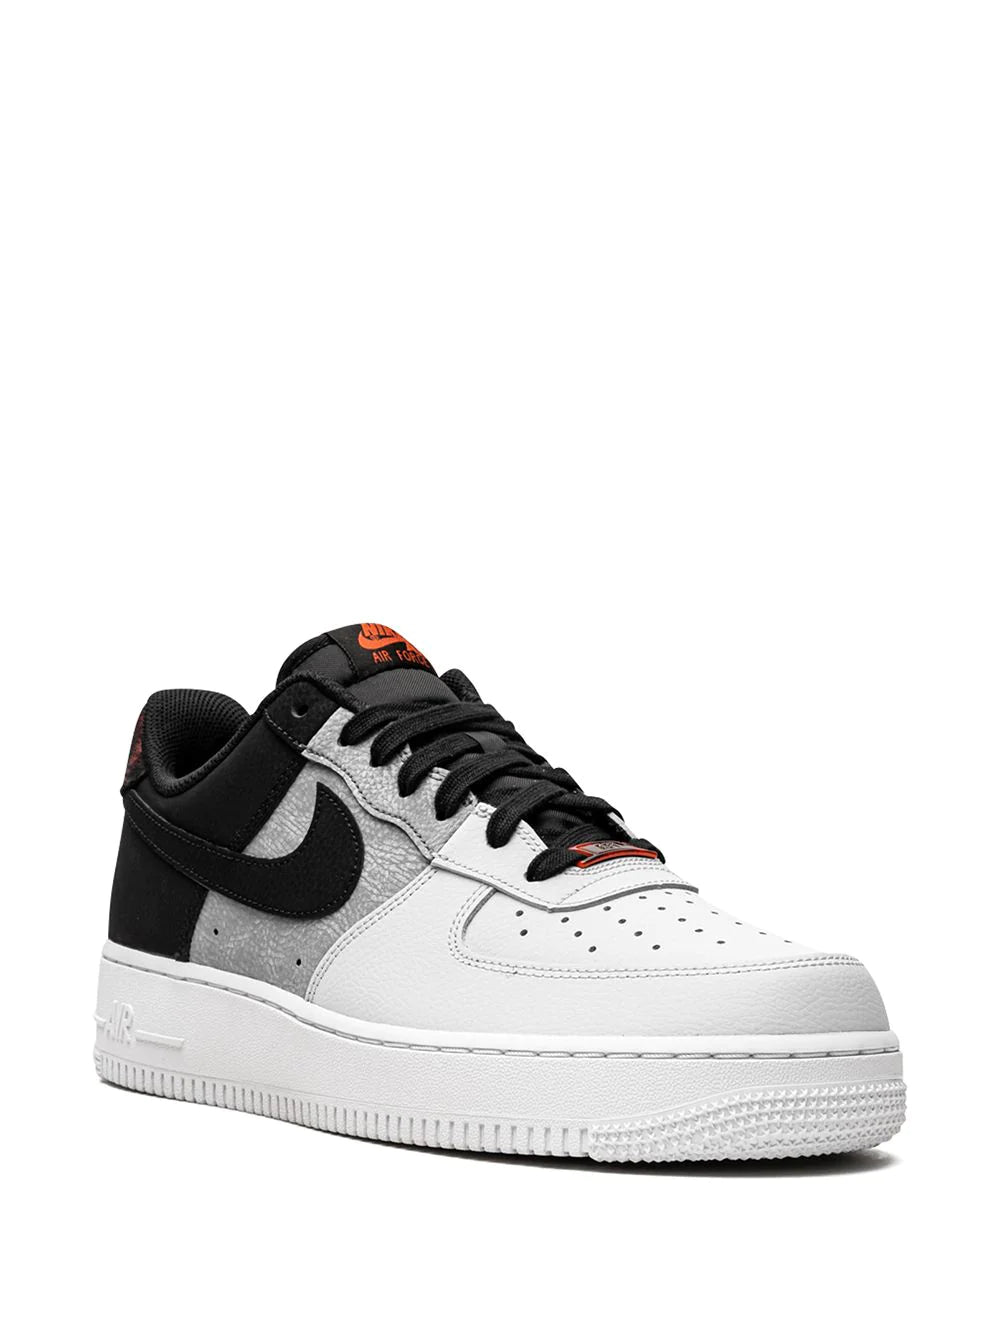 Nike Air Force 1 '07 LV8 BlackSmoke GreyWhite sneakers Shoellist شوليست  